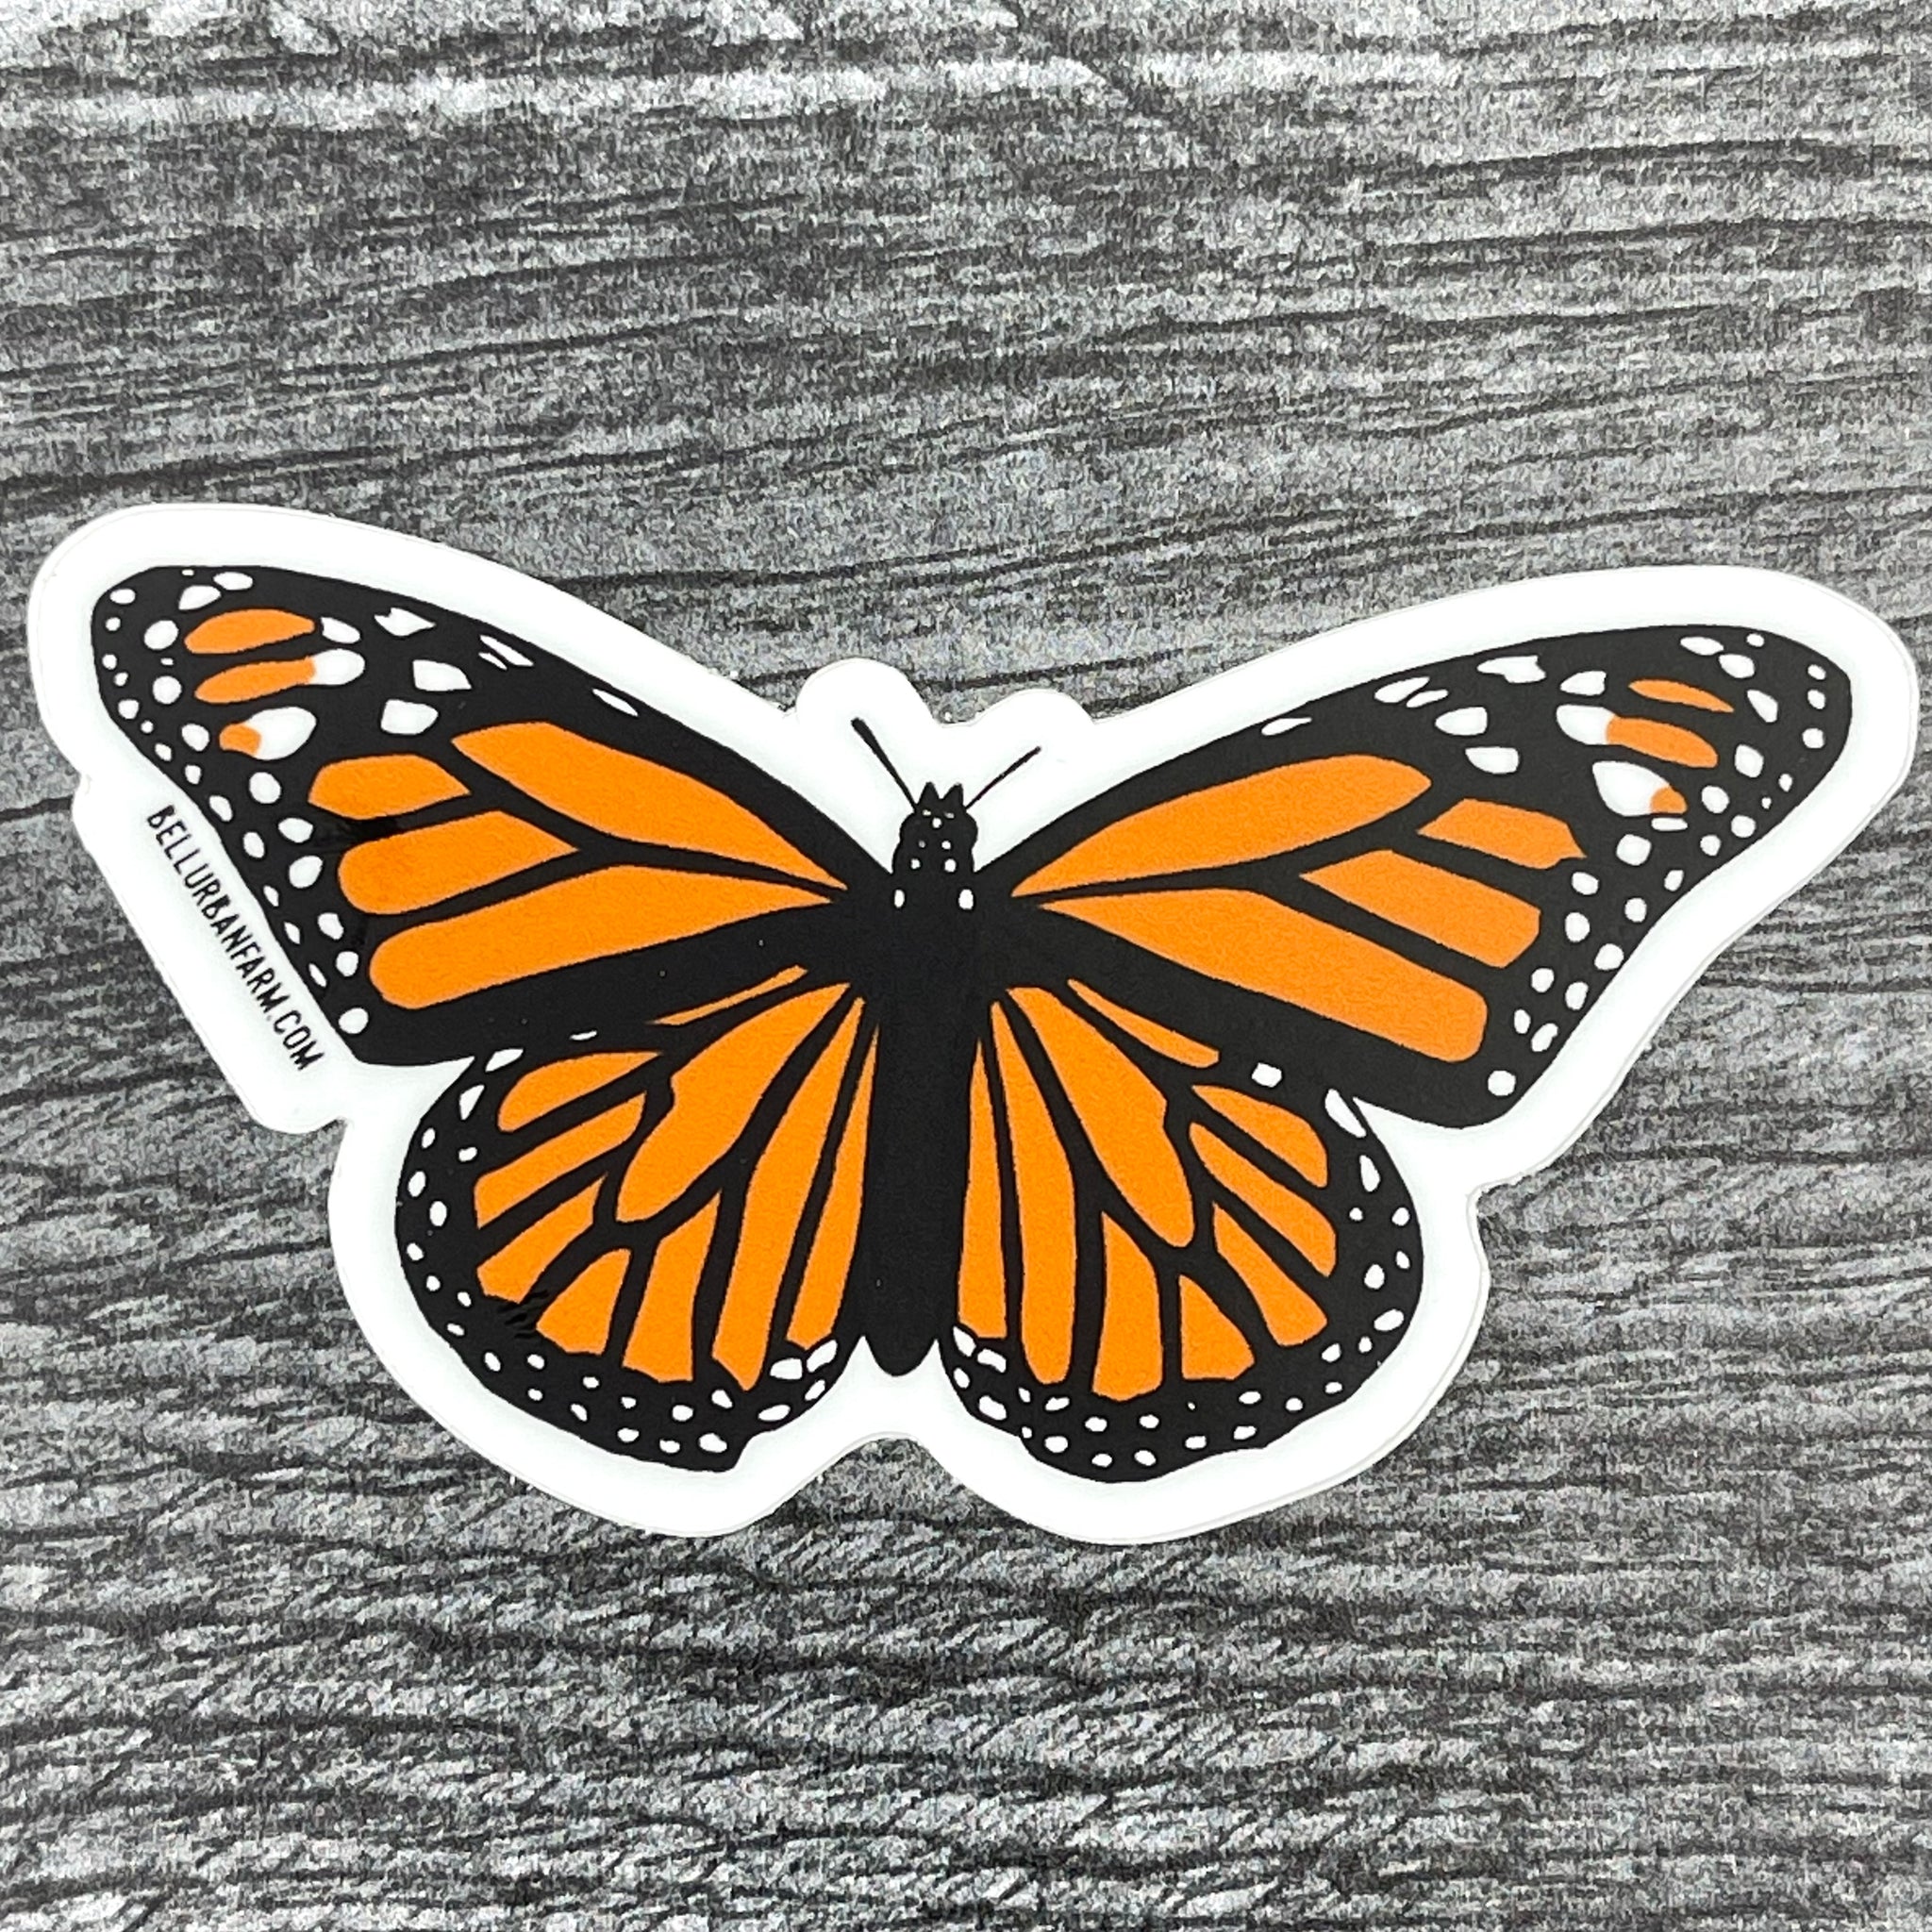 Sticker - Monarch Butterfly